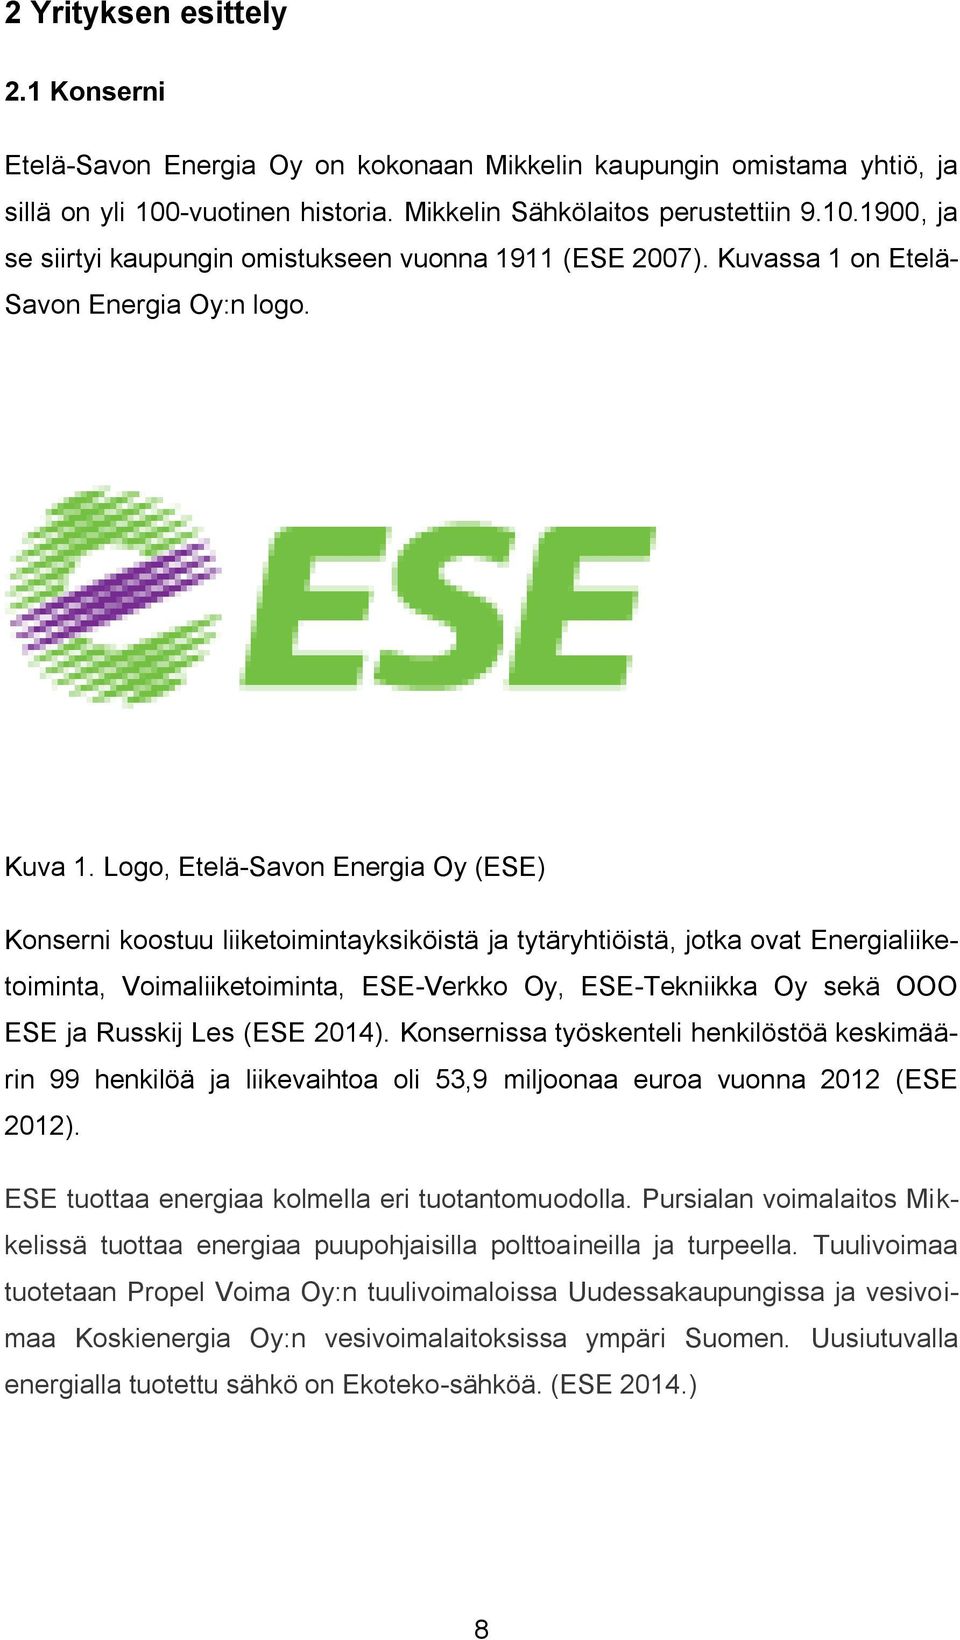 Logo, Etelä-Savon Energia Oy (ESE) Konserni koostuu liiketoimintayksiköistä ja tytäryhtiöistä, jotka ovat Energialiiketoiminta, Voimaliiketoiminta, ESE-Verkko Oy, ESE-Tekniikka Oy sekä OOO ESE ja